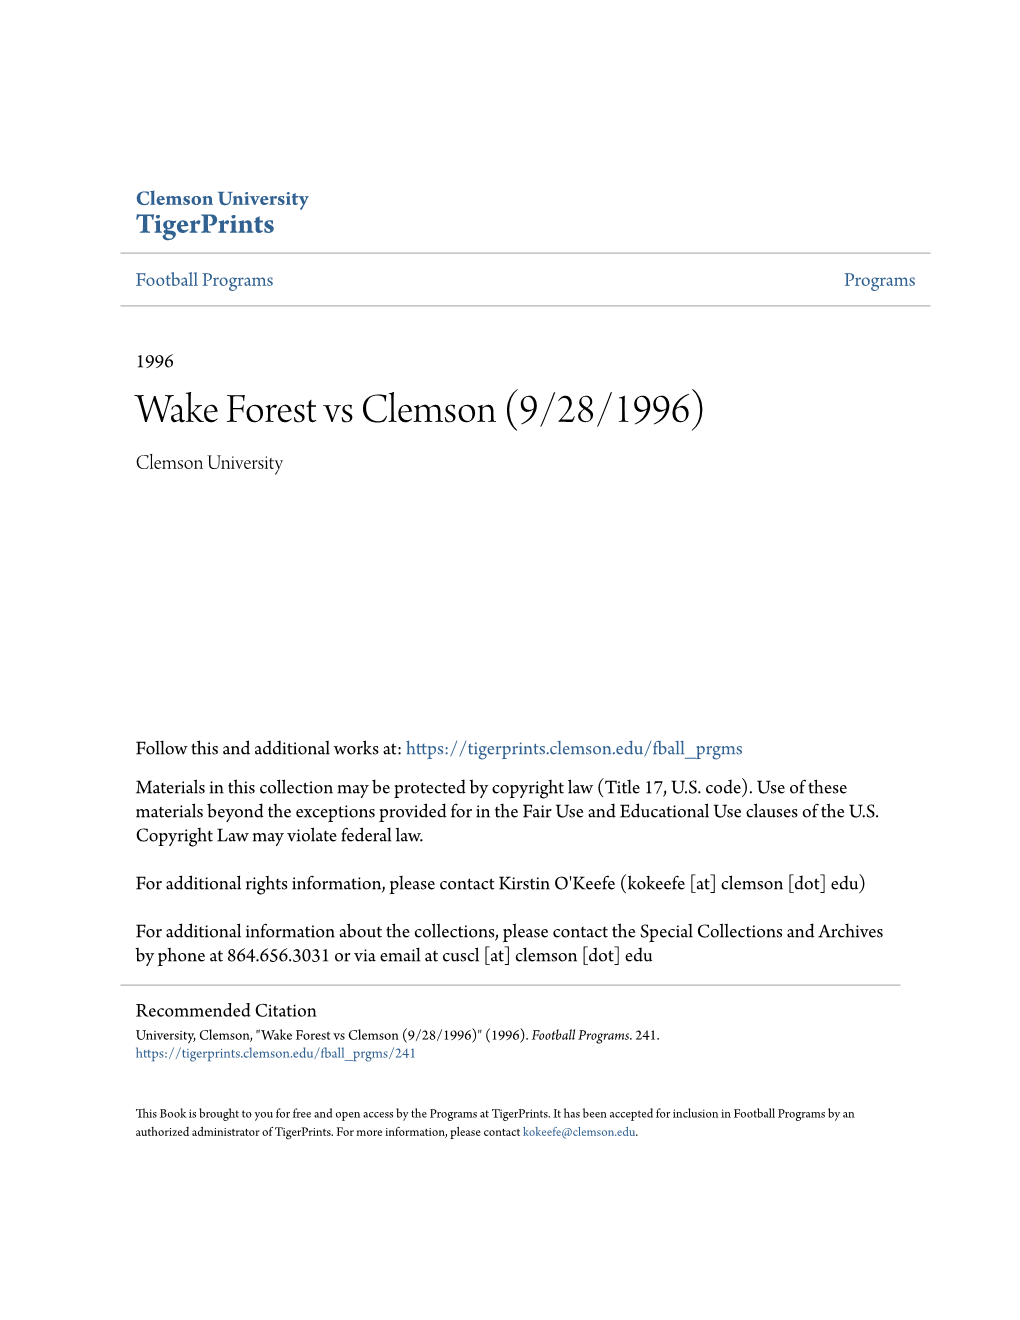 Wake Forest Vs Clemson (9/28/1996) Clemson University